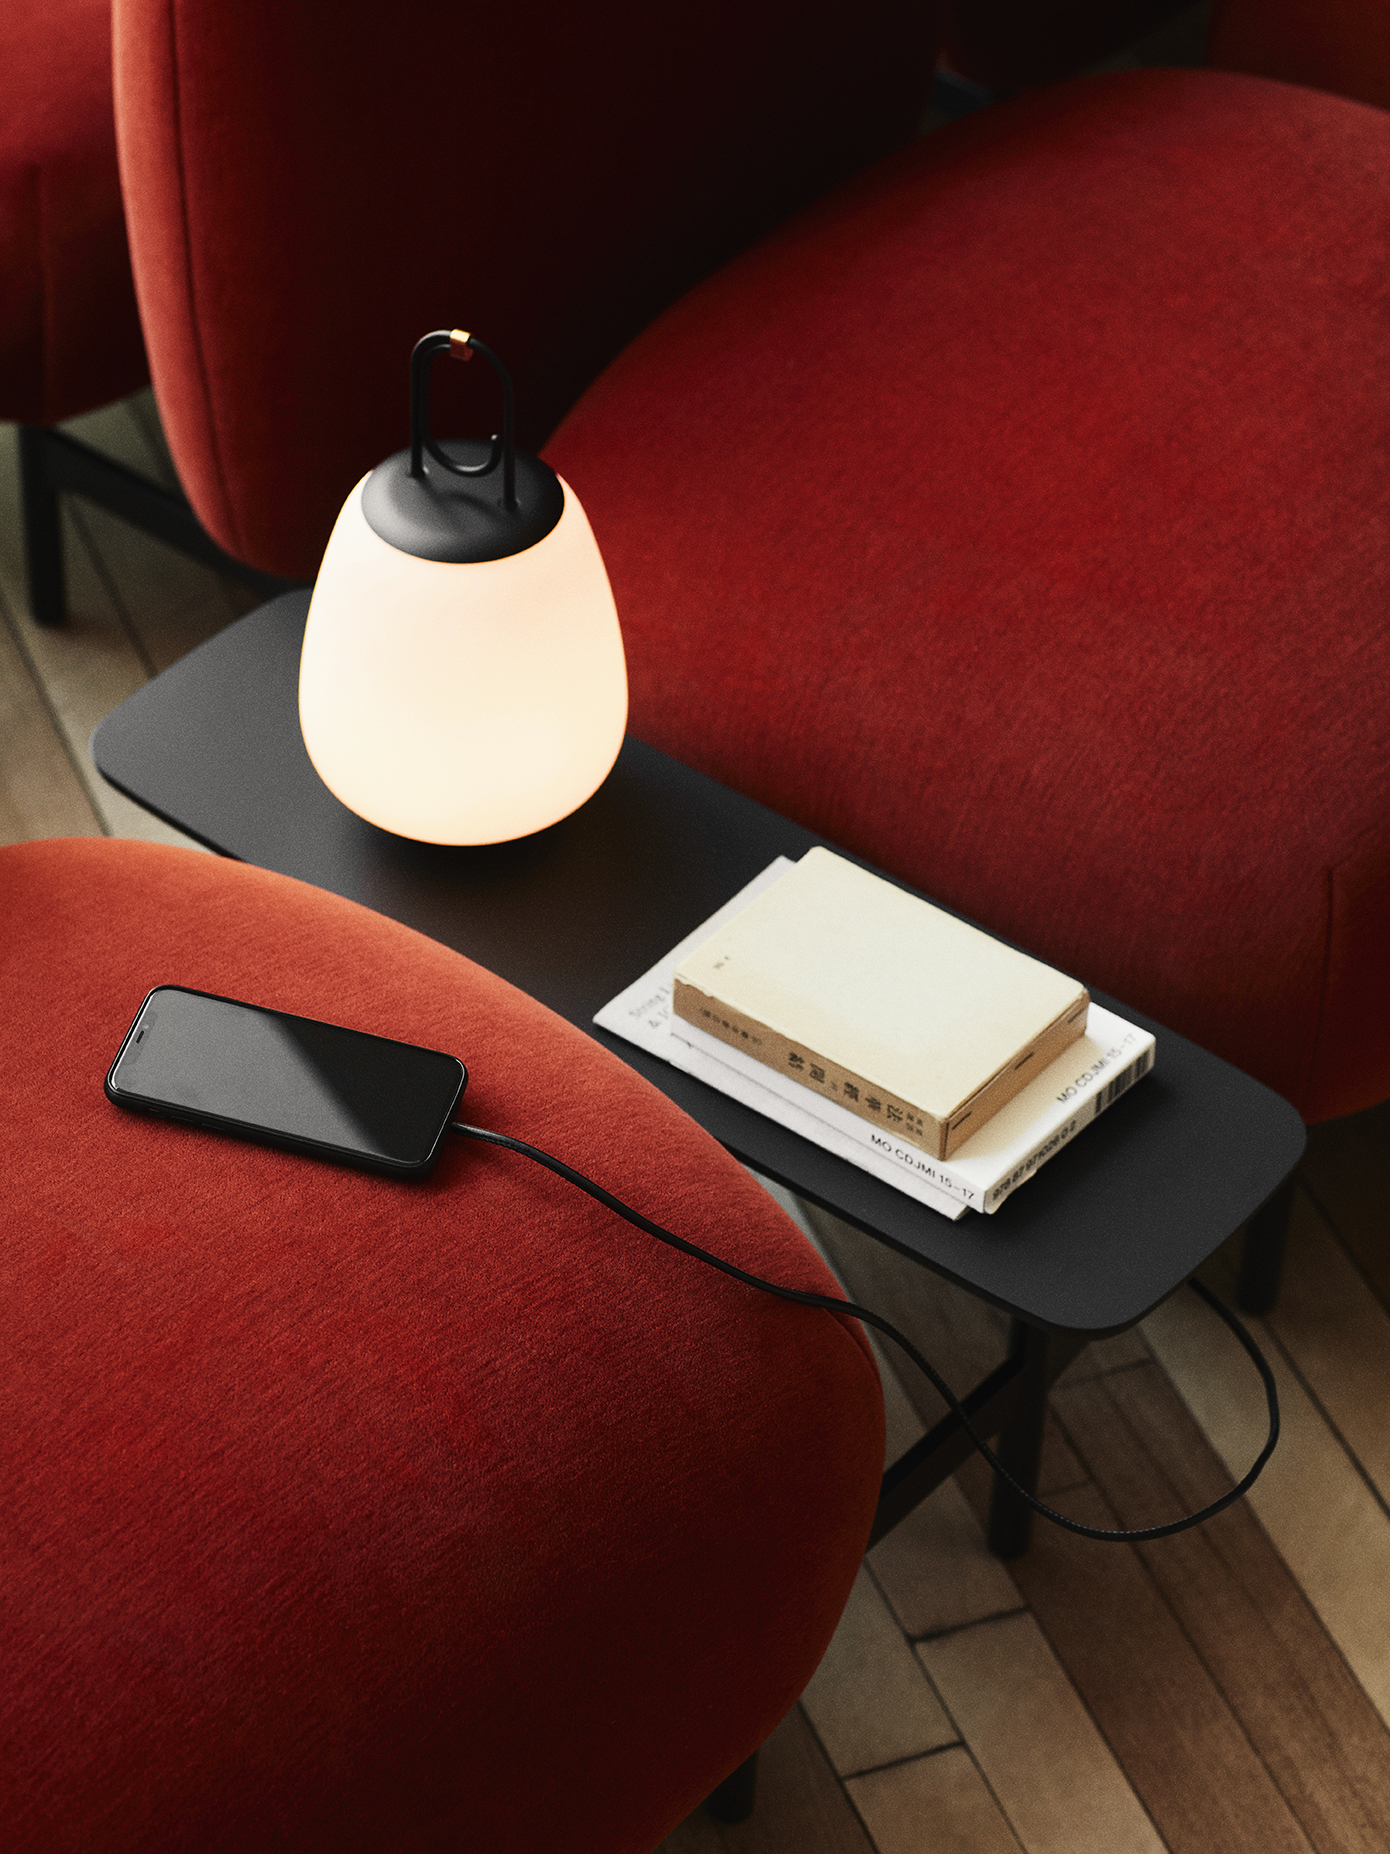 Модульный диван Isole с опцией встраиваемых столиков с розеткой, портативная лампа Lucca с крючком для подвешивания – датская фабрика